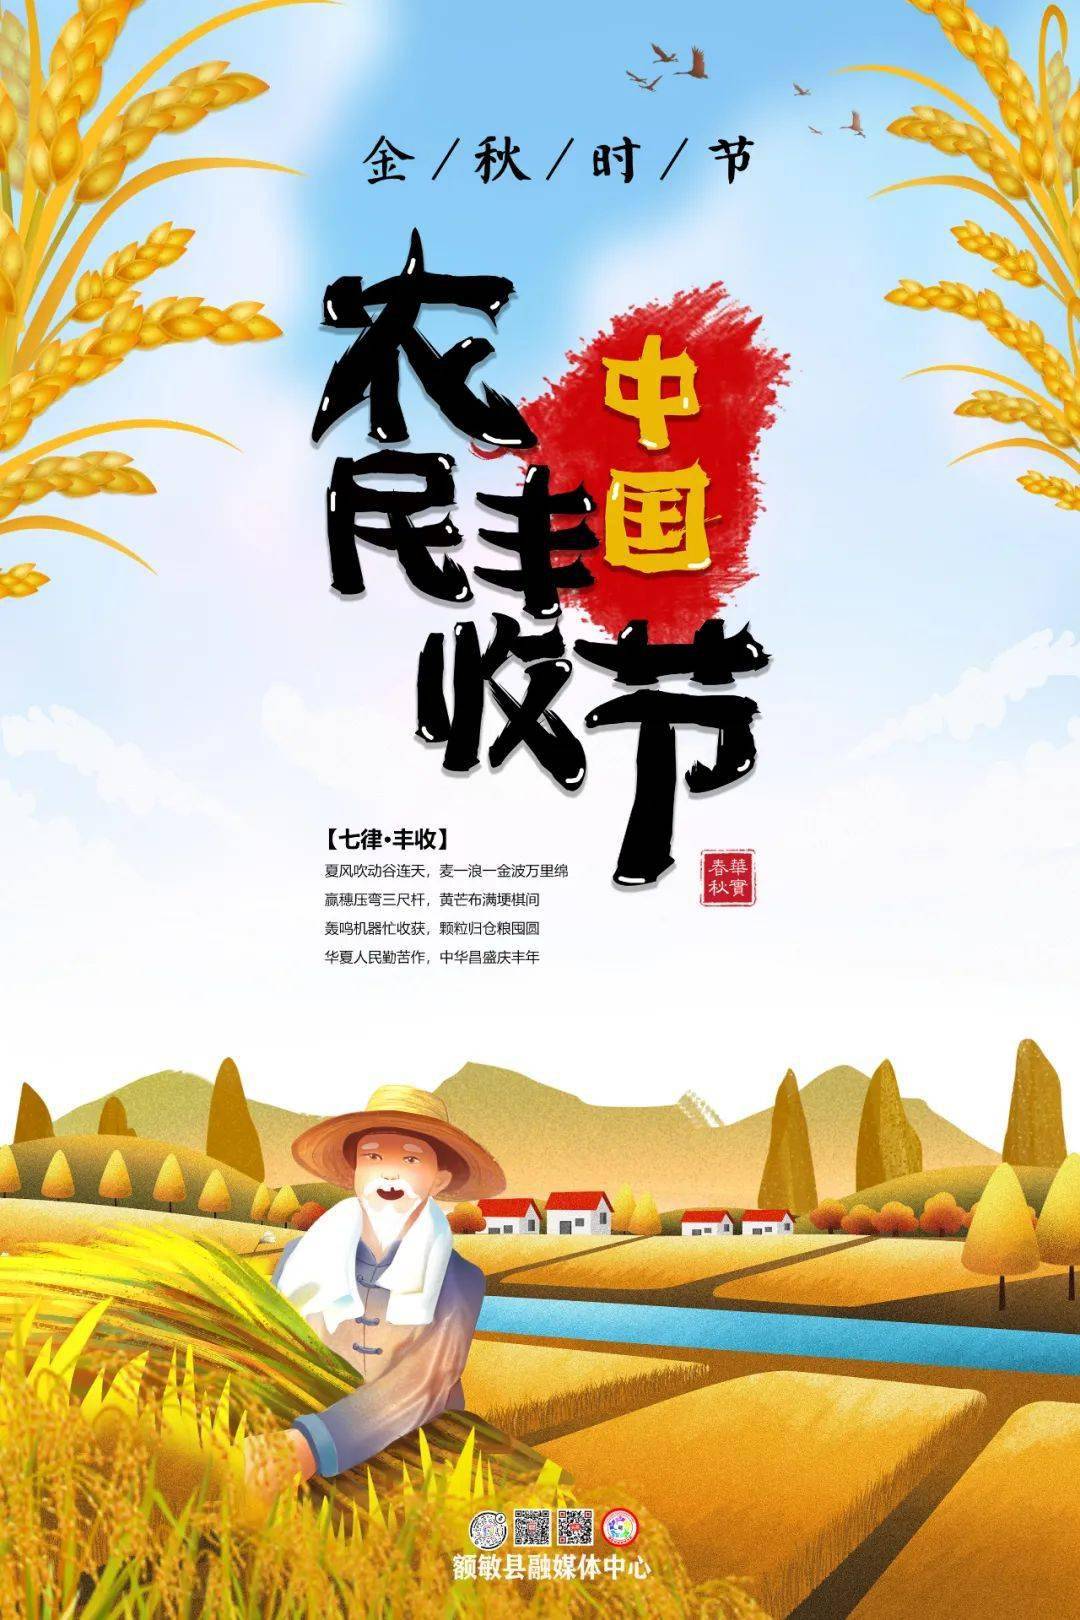 【庆丰收 感党恩 美家园】海报|庆祝第四届中国农民丰收节